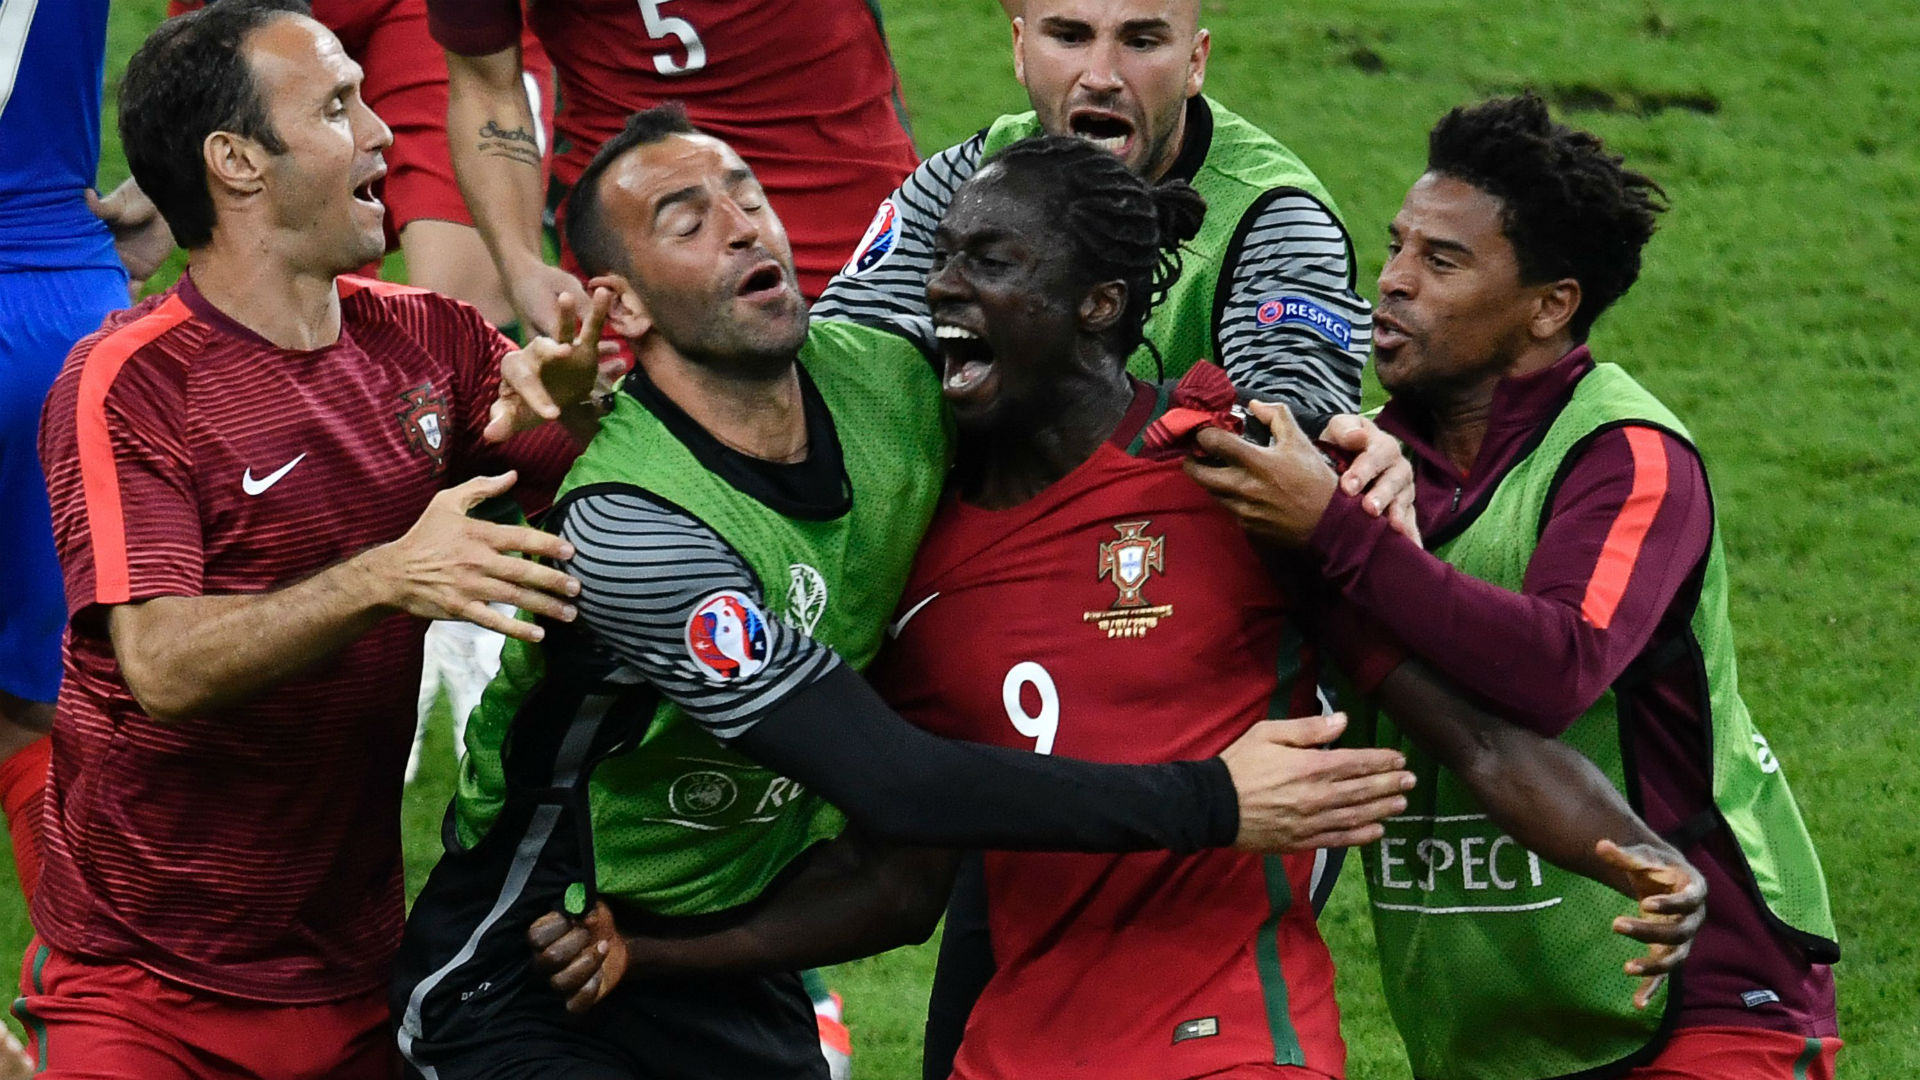 يورو 2016 | قذيفة إيدير تمسح دموع رونالدو وتمنح البرتغال لقبها الأول Eder-portugal-france-uefa-euro-10072016_gmj2e08aruiy1bd46kdltskfl